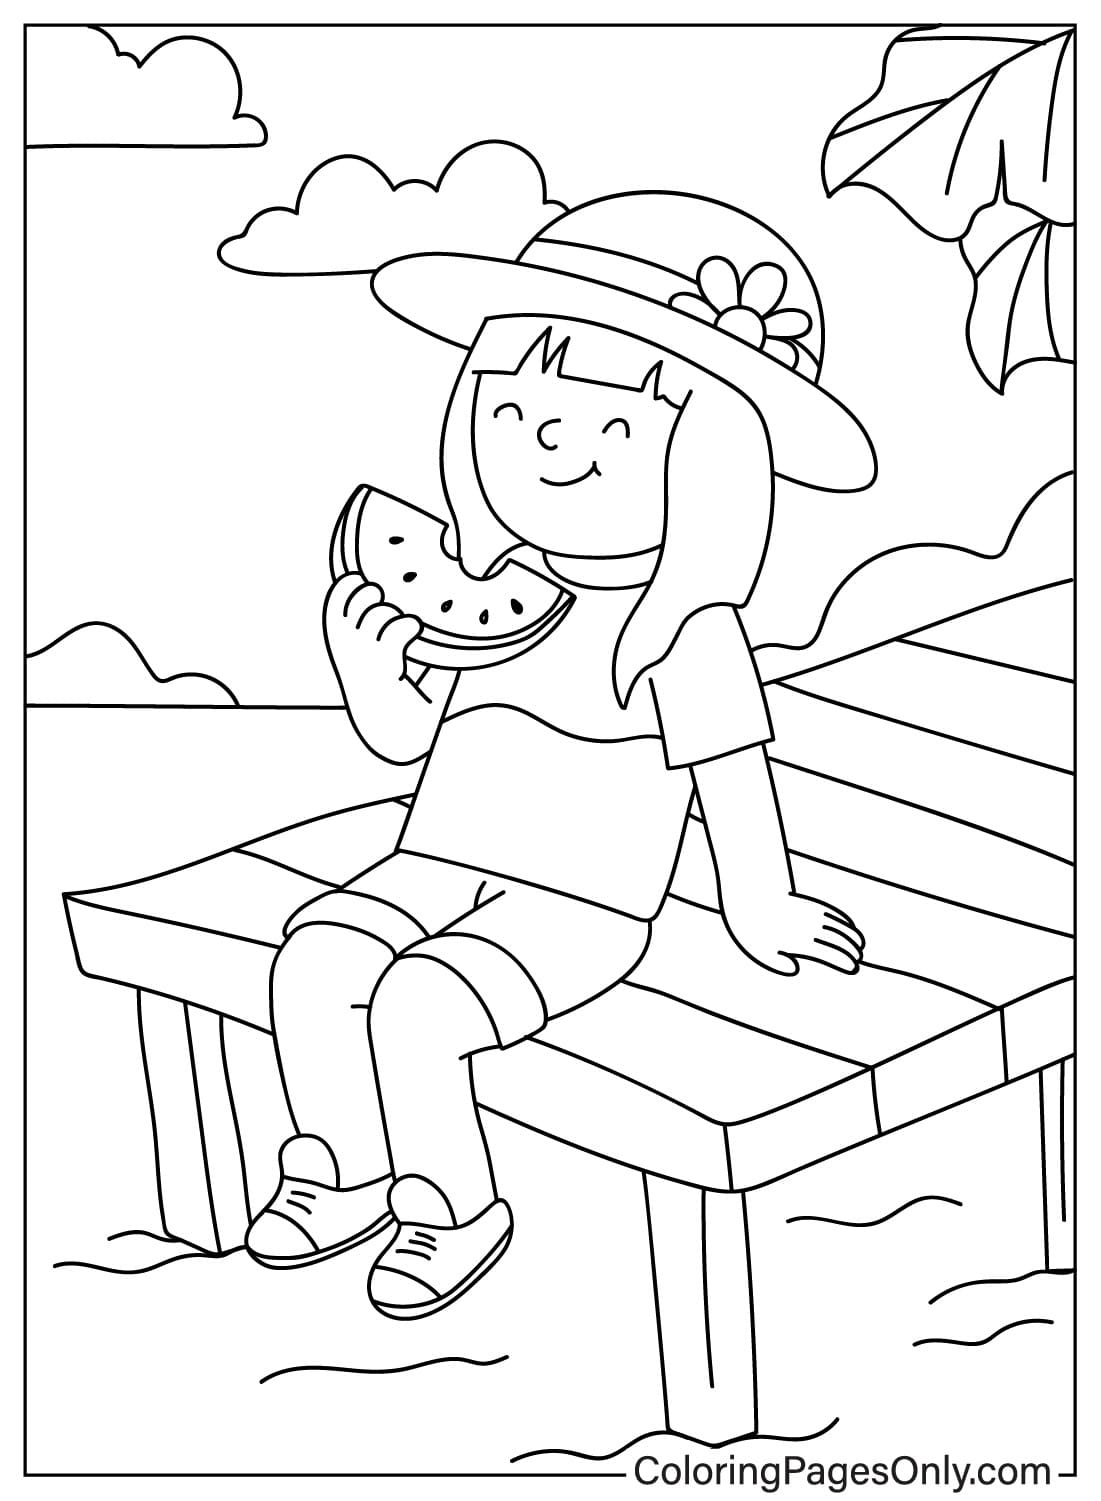 Маленькая девочка сидит и ест летний арбуз